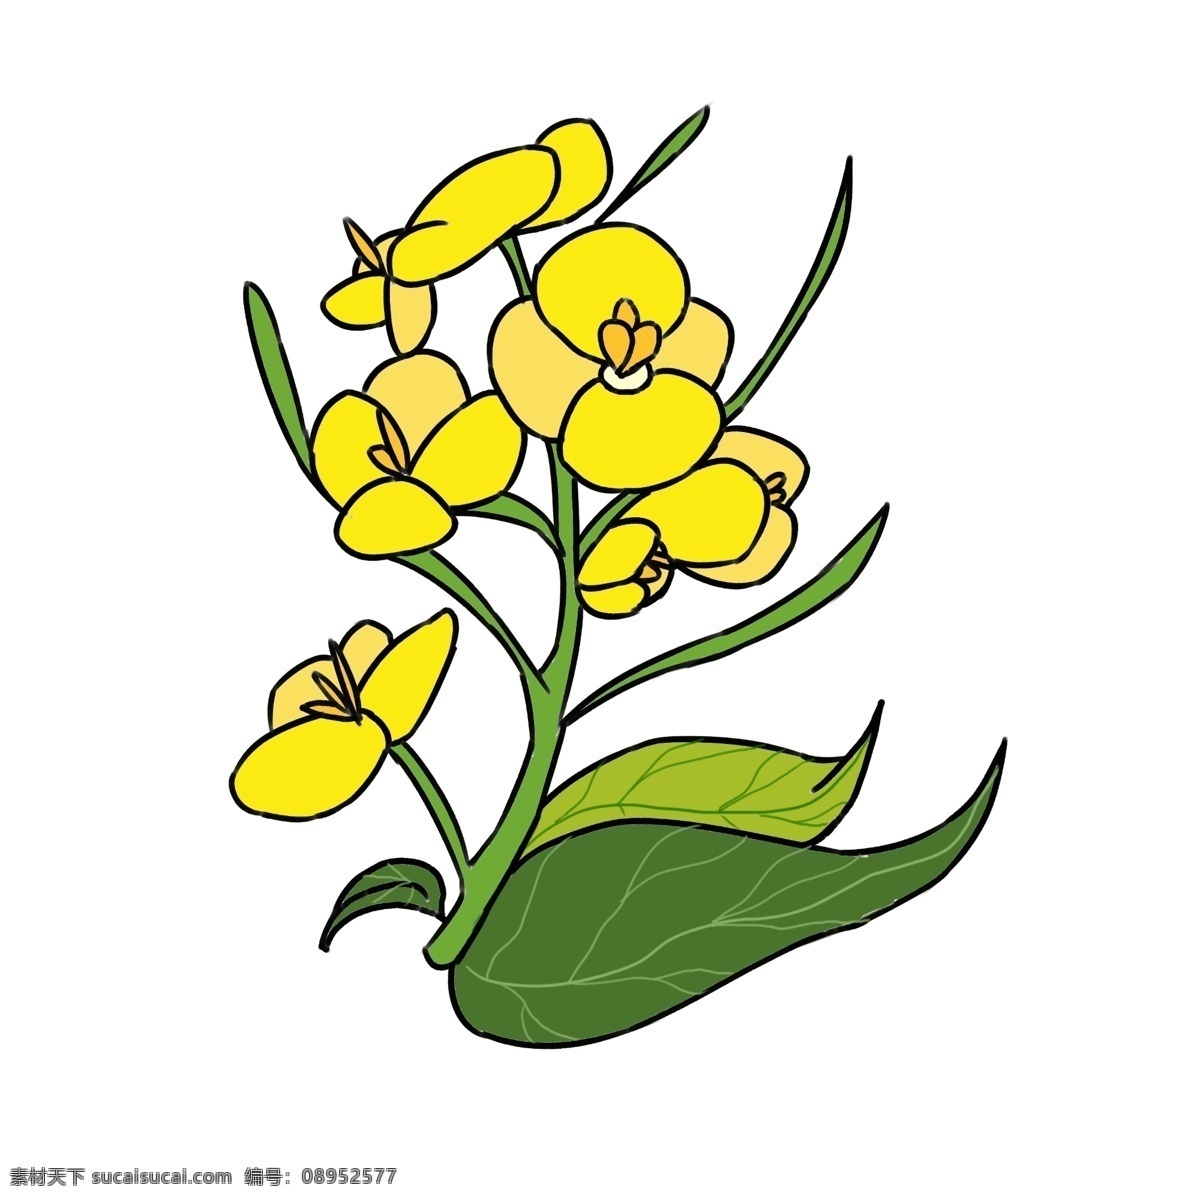 唯美 鲜花 黄色 花朵 一束油菜花 绽放油菜花 唯美鲜花 油菜花插画 黄色花朵插画 绿色叶子插画